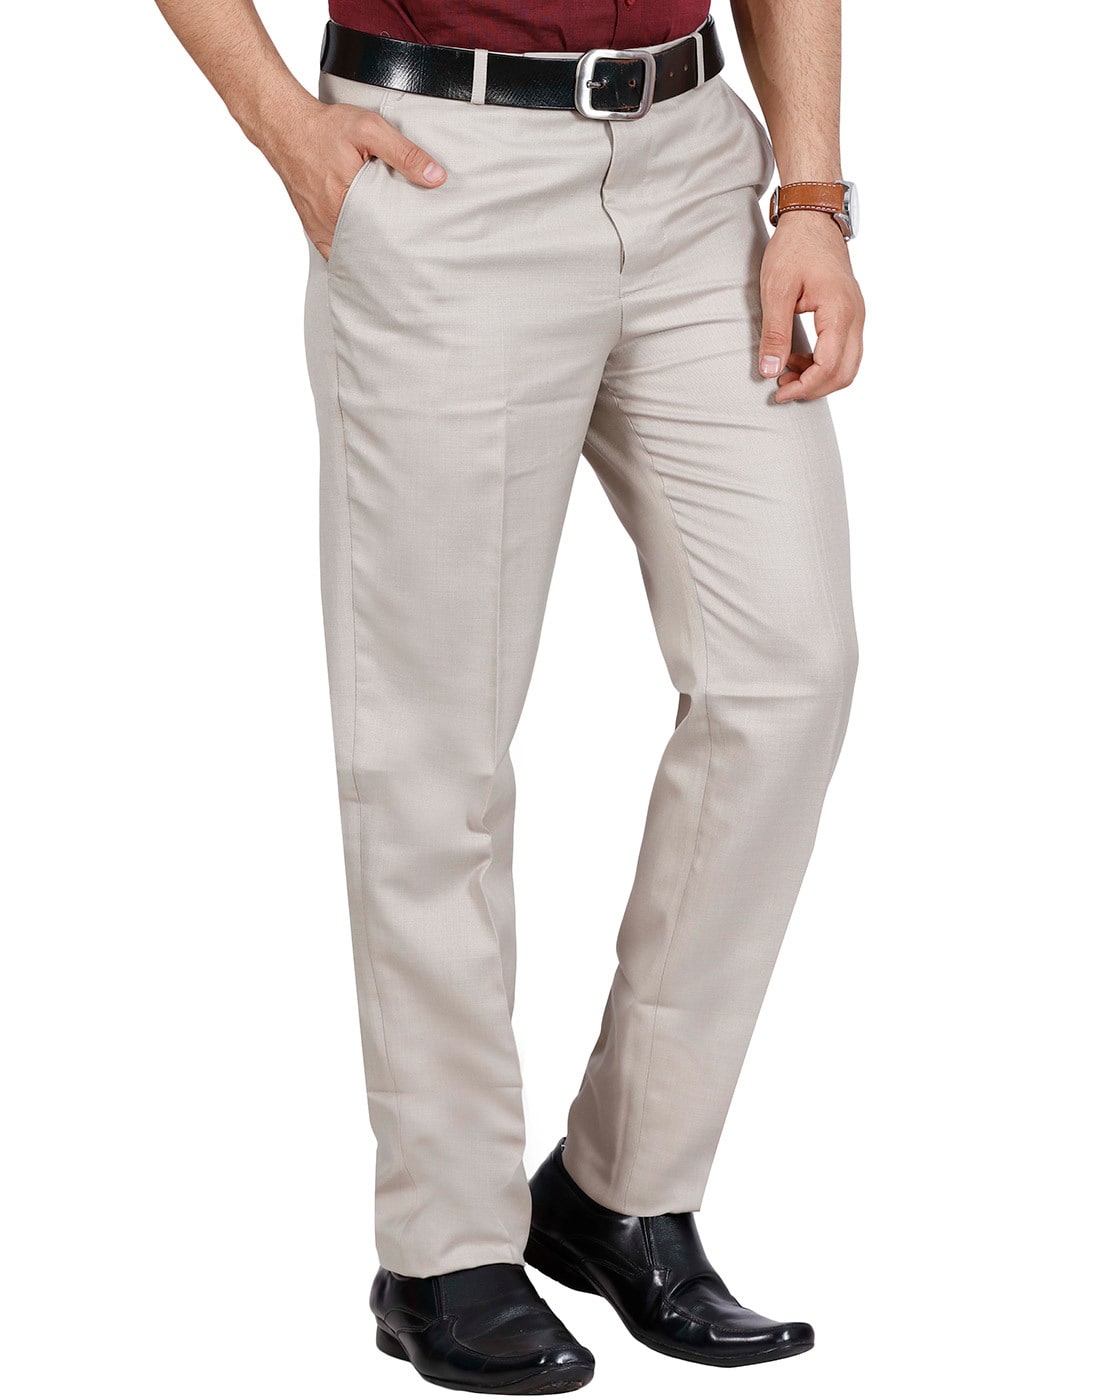 Buy Van Galis Fashion Wear Dark Brown Formal Trouser for Men at Amazon.in